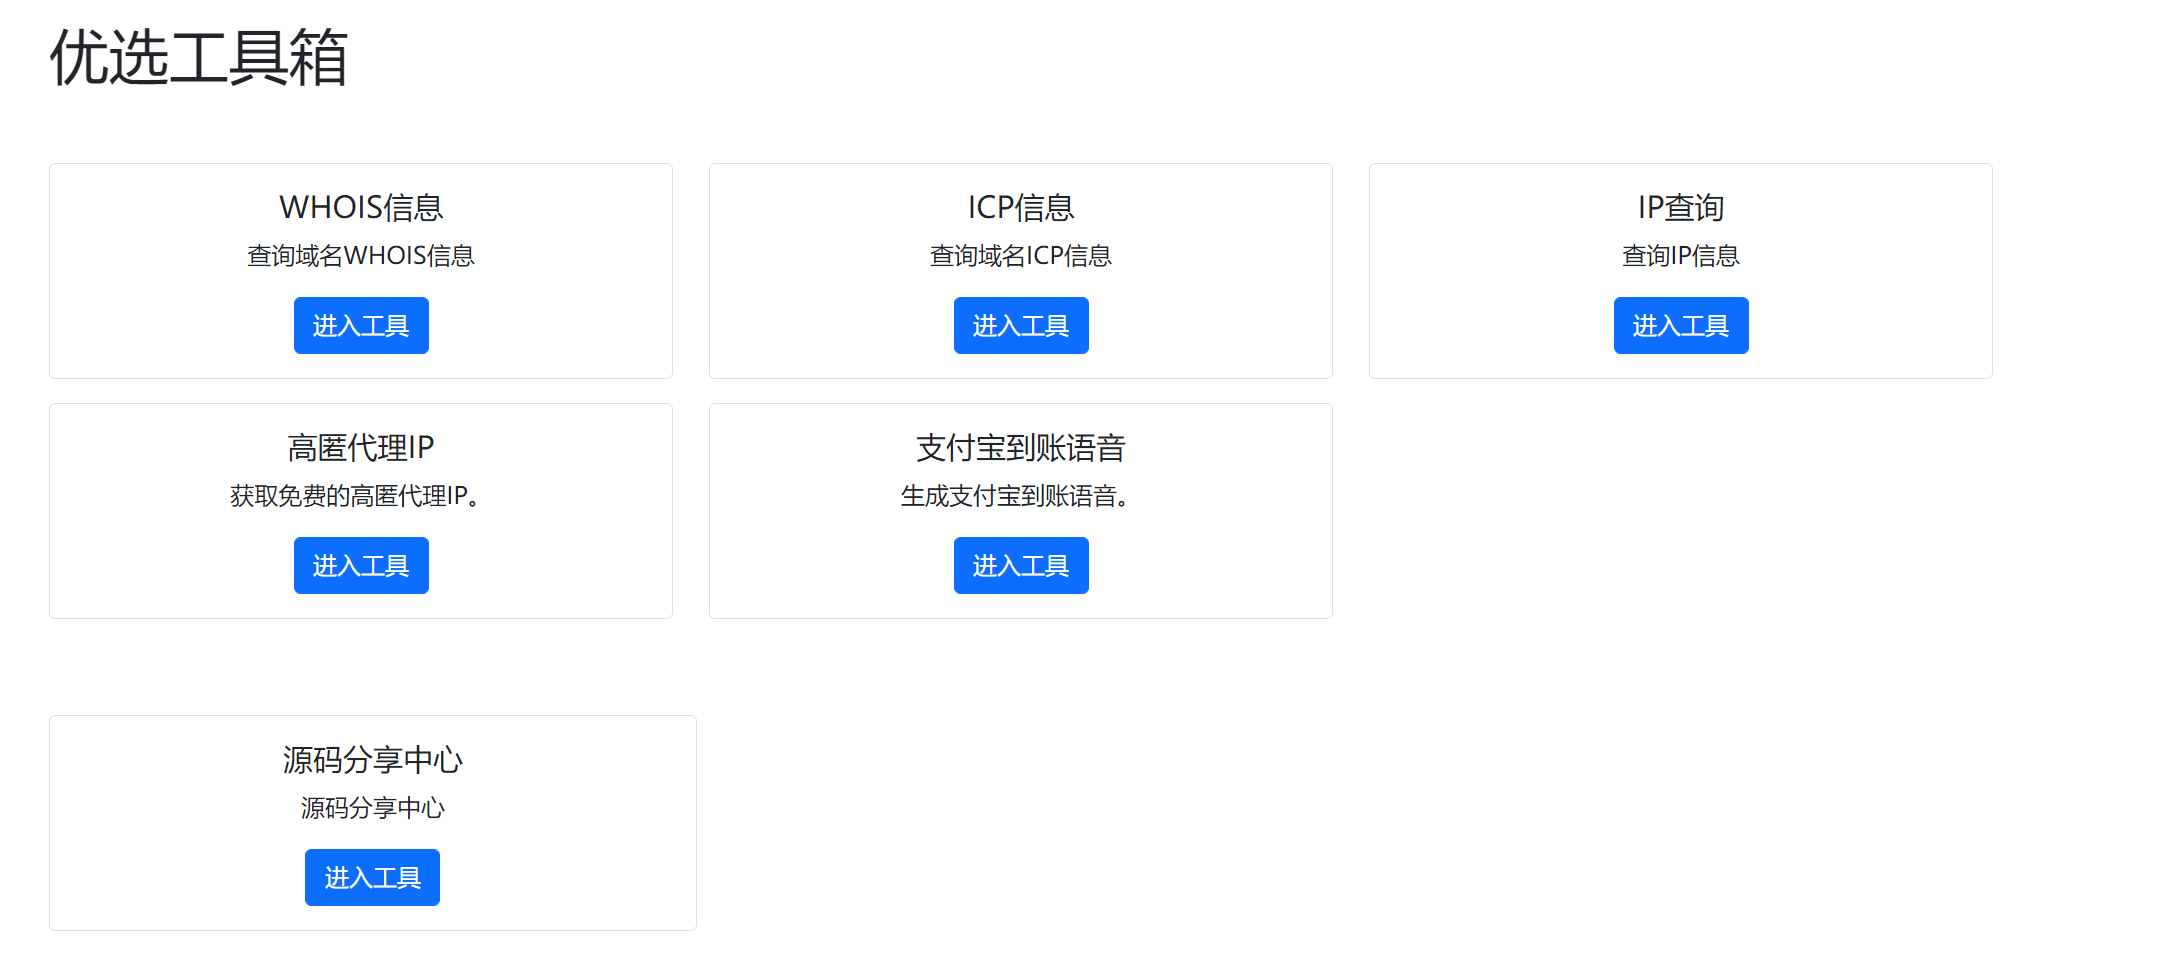 【优选源码】 小杰工具箱 HTML单页源码